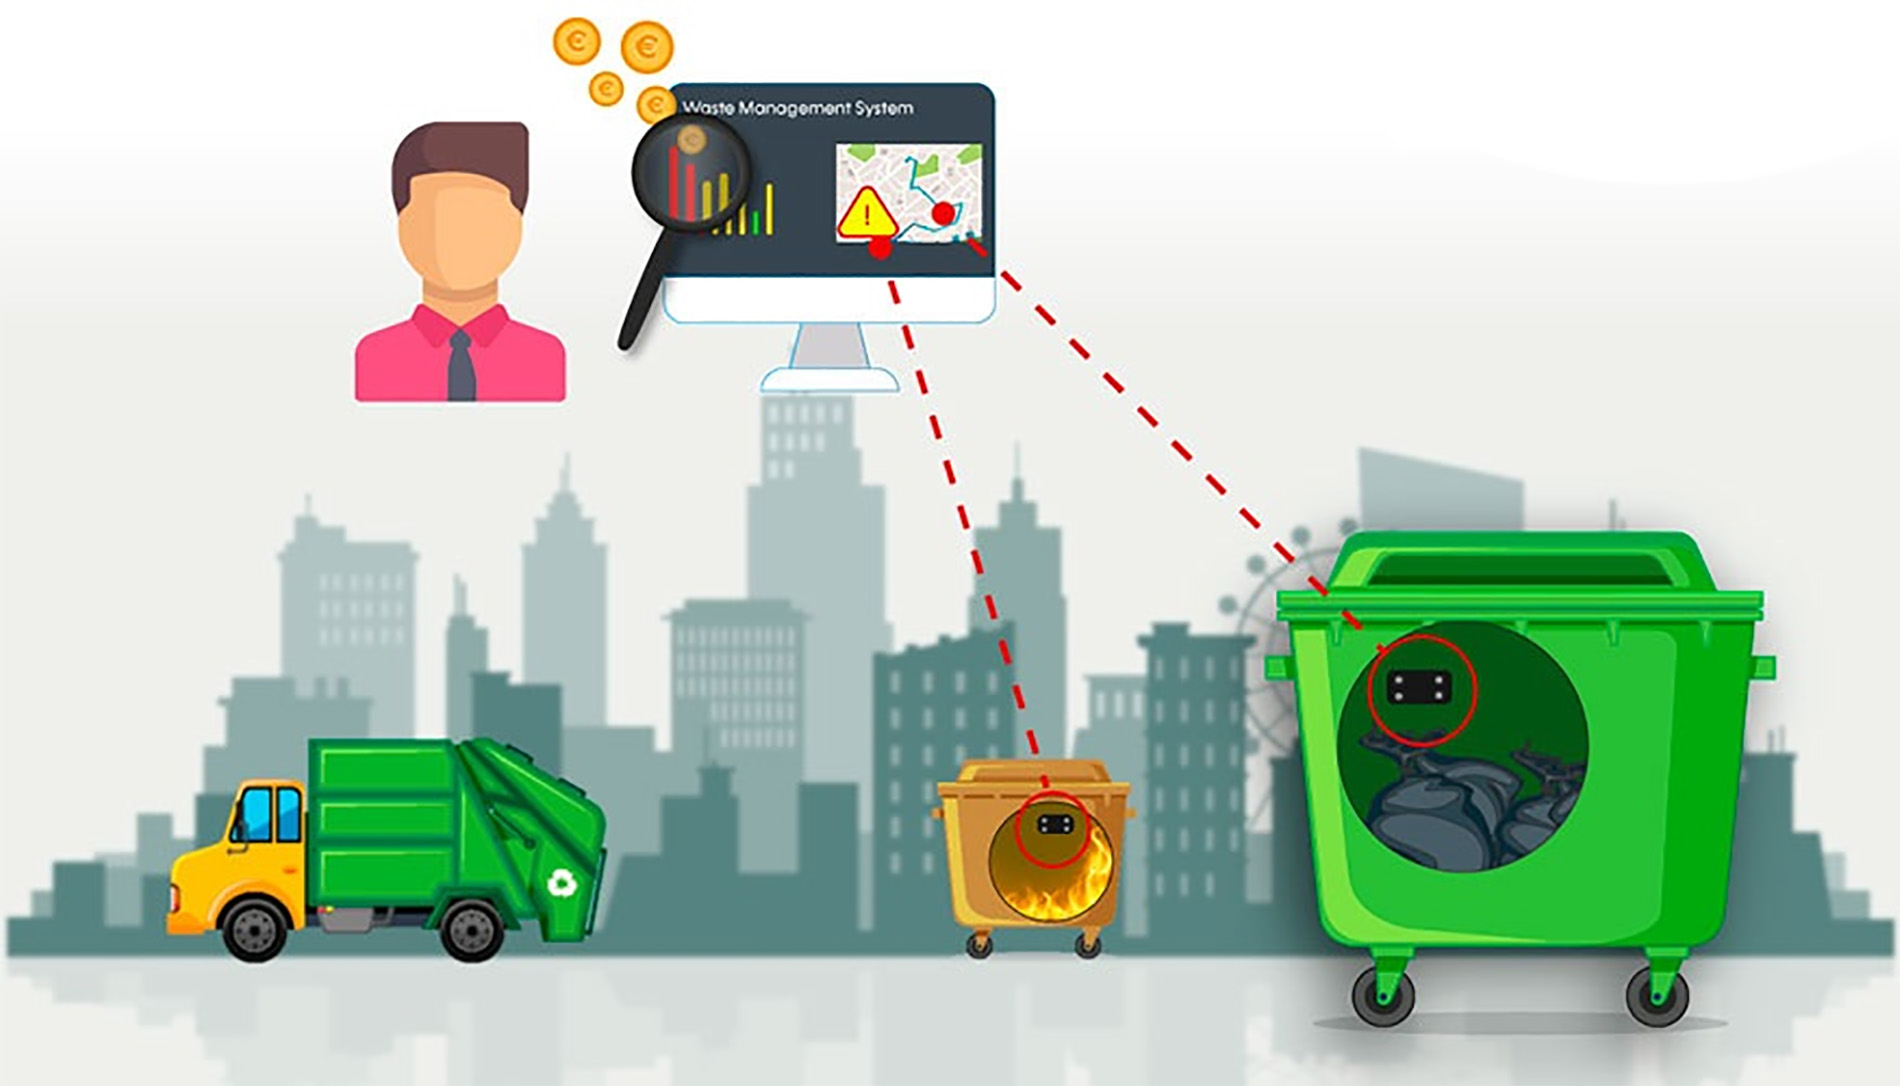 Ver Trabajo presentado Plataforma de gestión de residuos inteligente